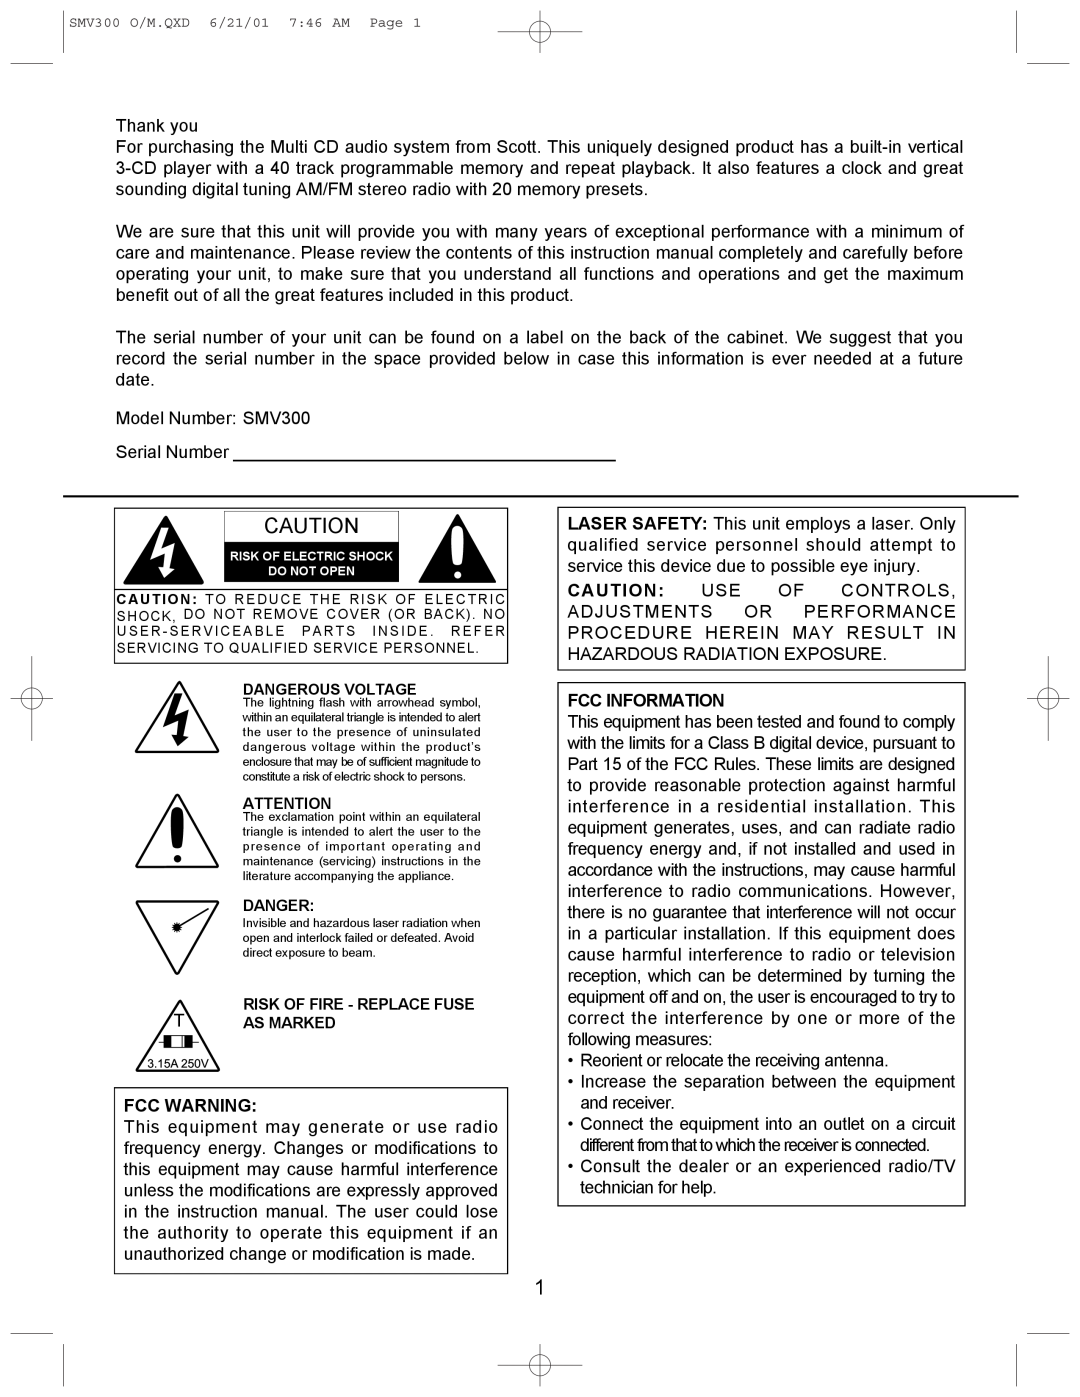 Scotts SMV300 instruction manual 3.15A250V, Fcc Warning, Fcc Information 